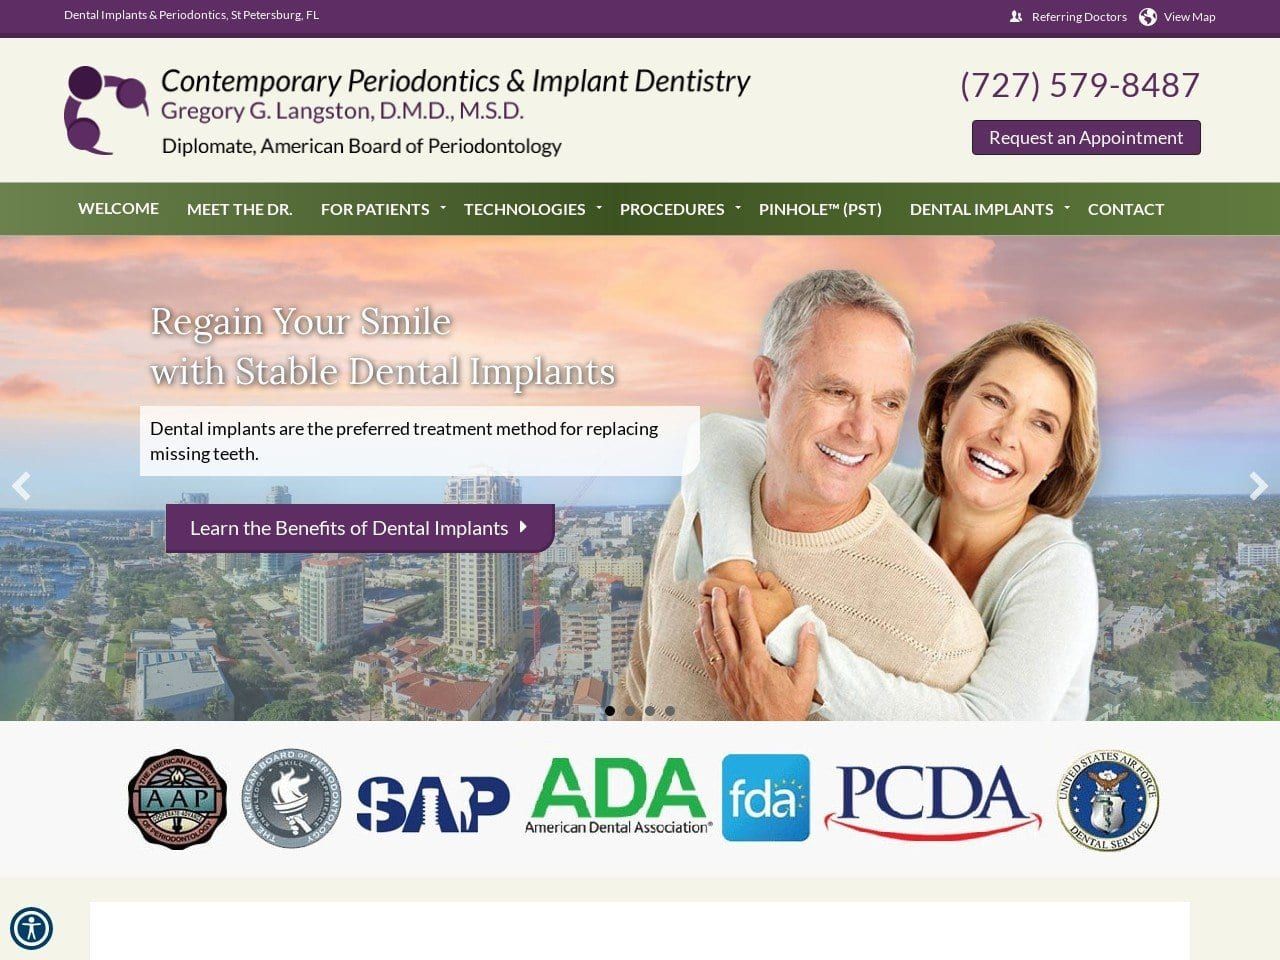 Contemporary Periodontics & Implant Dentistry Website Screenshot from contemporaryperio.com